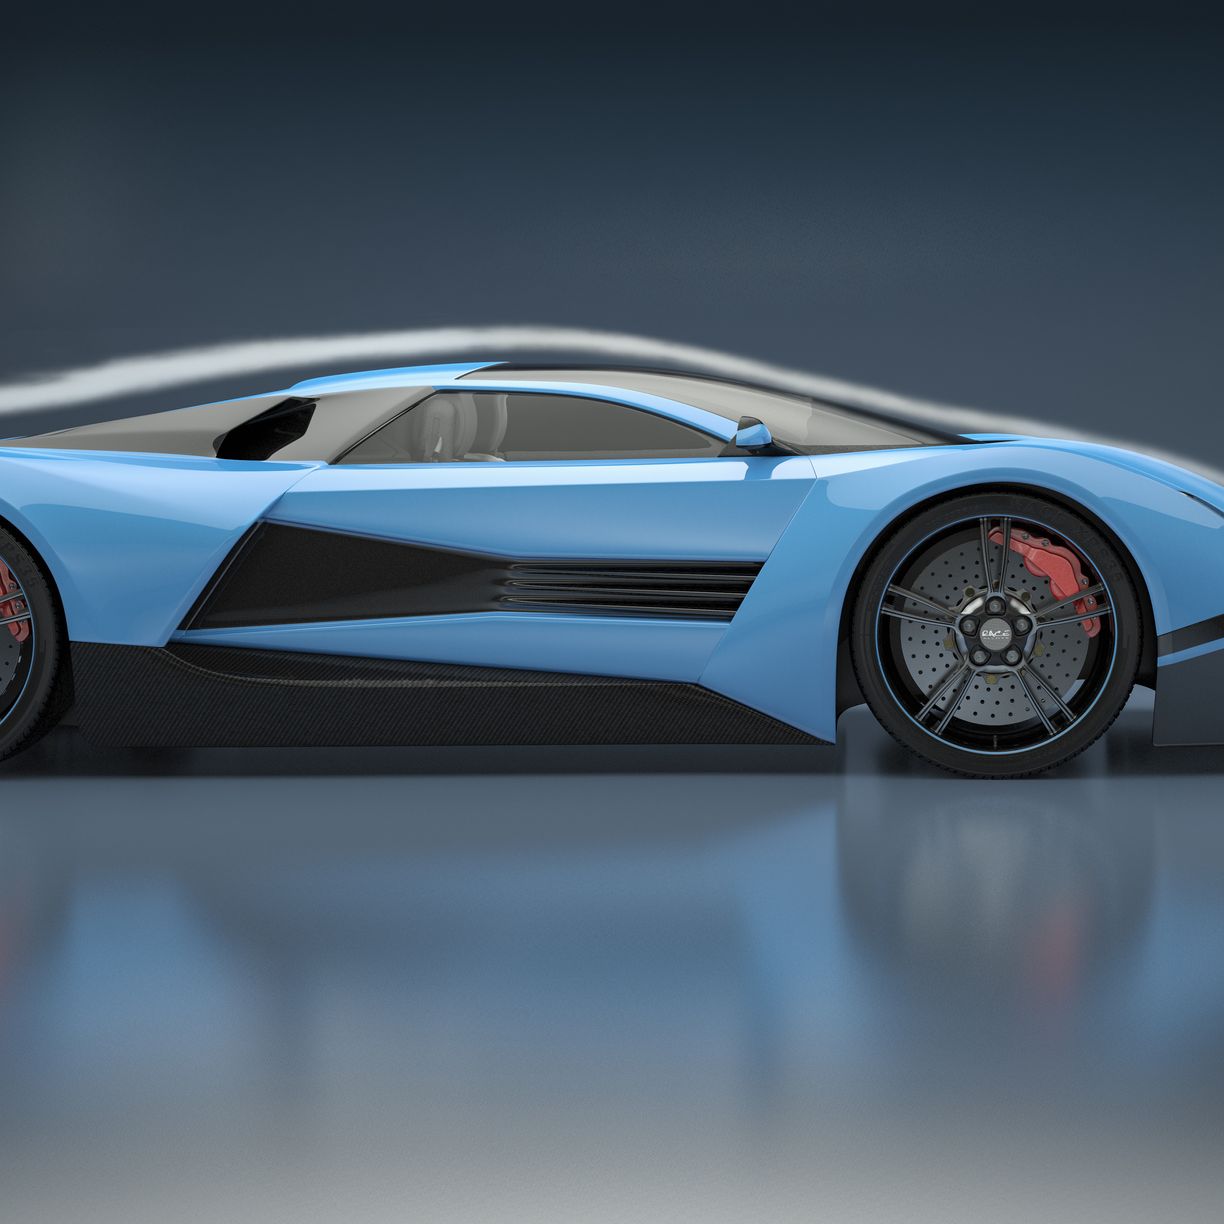 most aerodynamic car shape